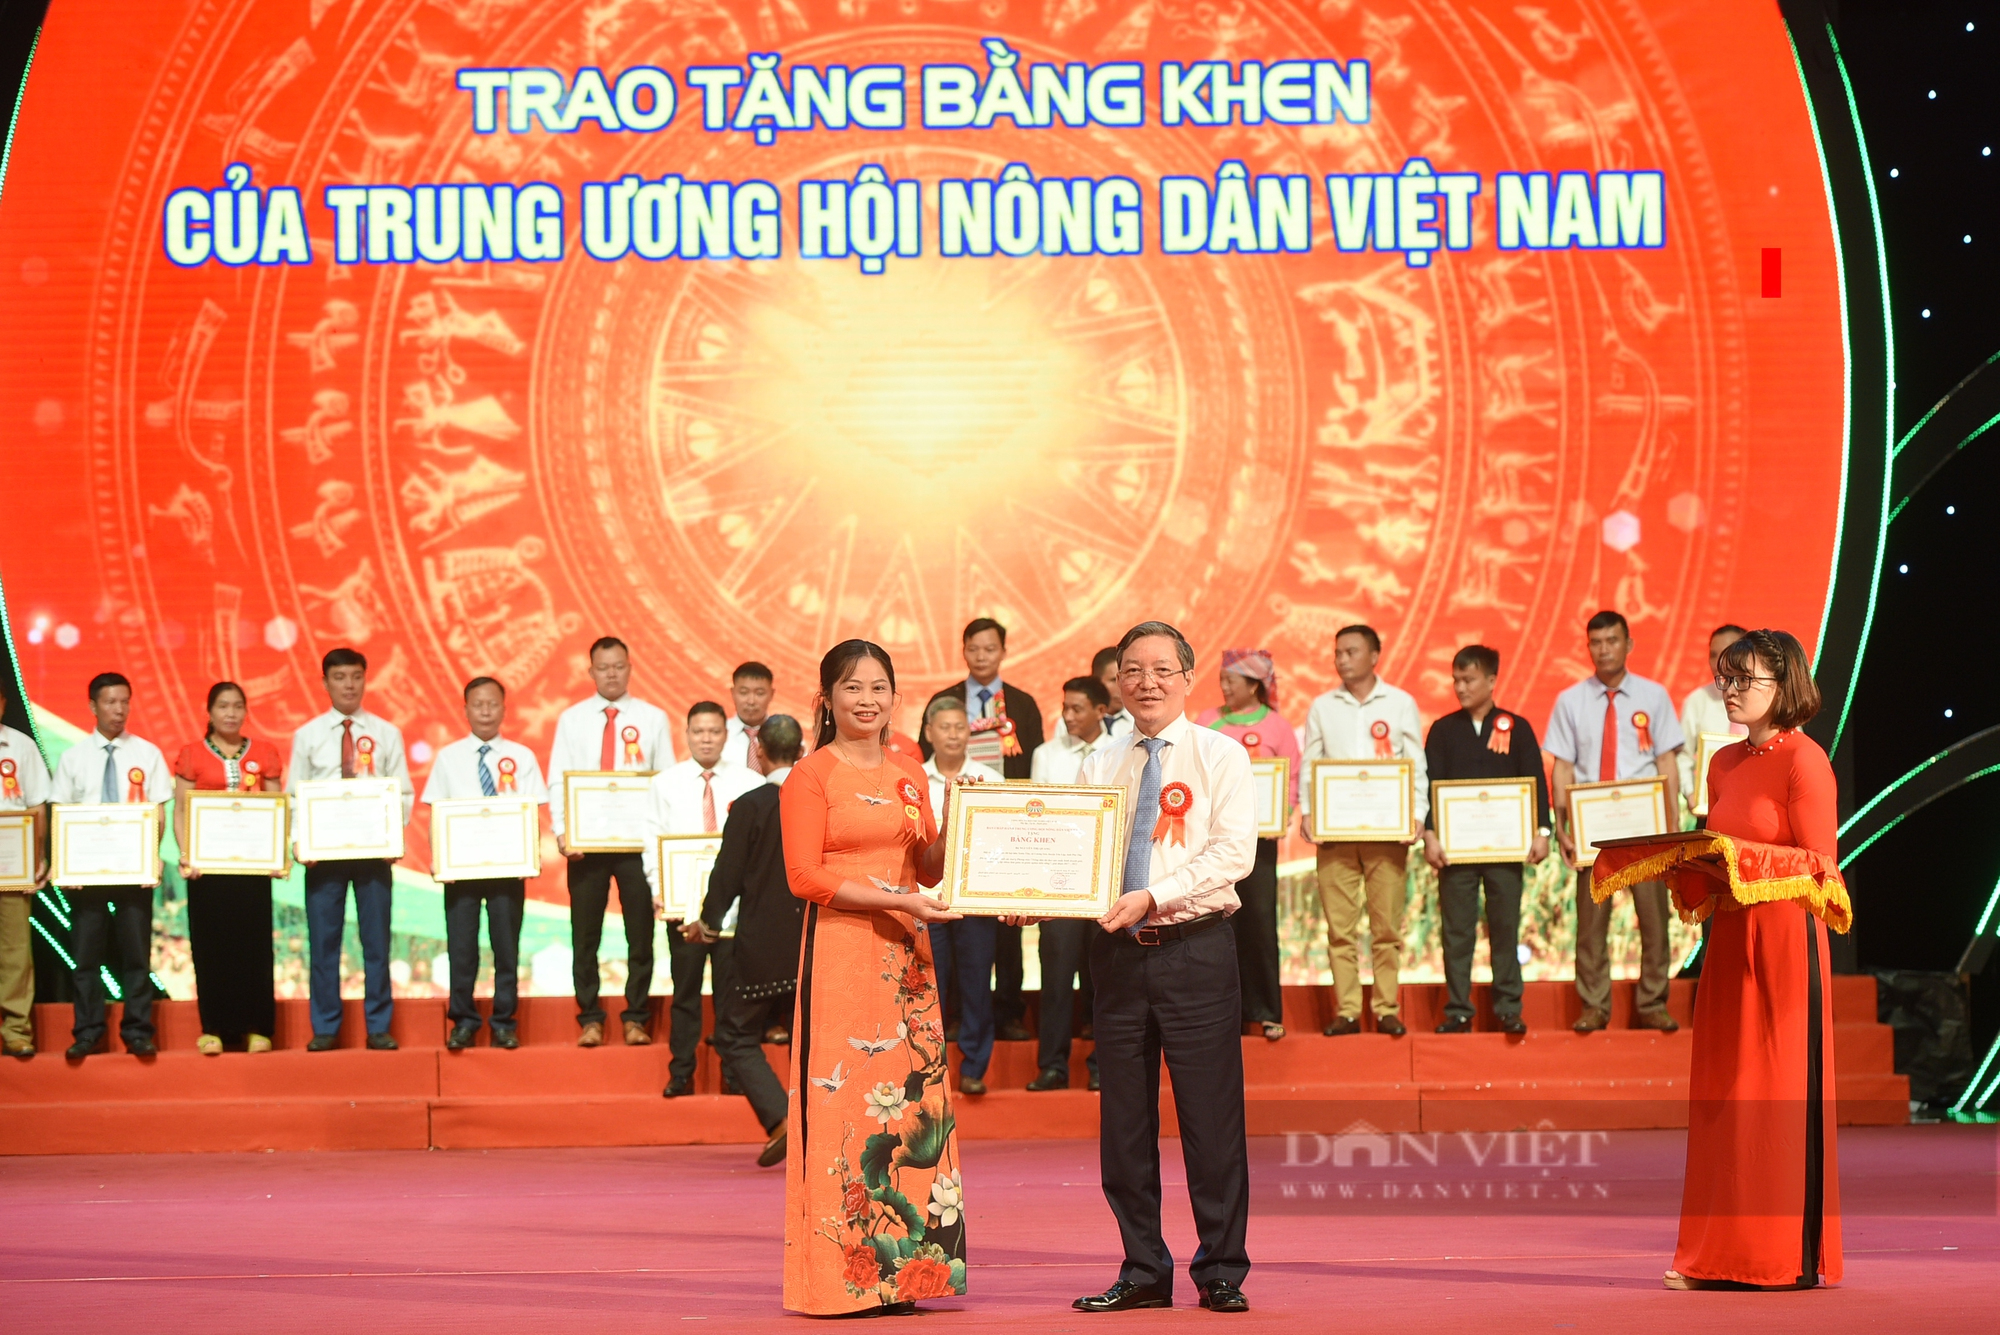 Gần 300 nông dân được tặng bằng khen của Trung ương Hội nông dân Việt Nam - Ảnh 6.